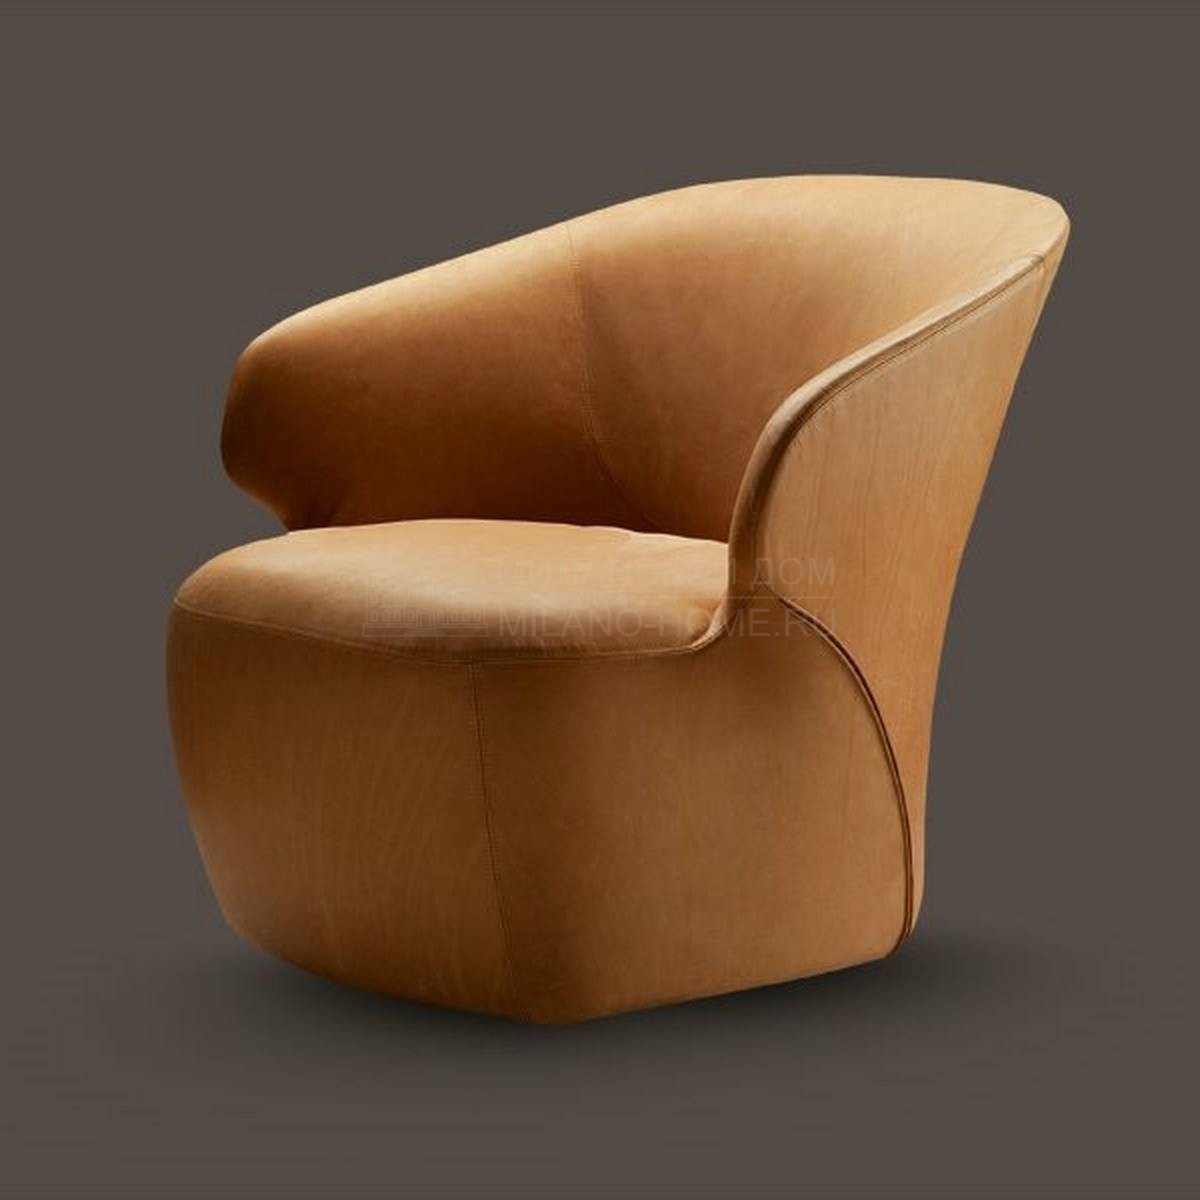 Кожаное кресло Arom armchair leather из Италии фабрики ZANOTTA